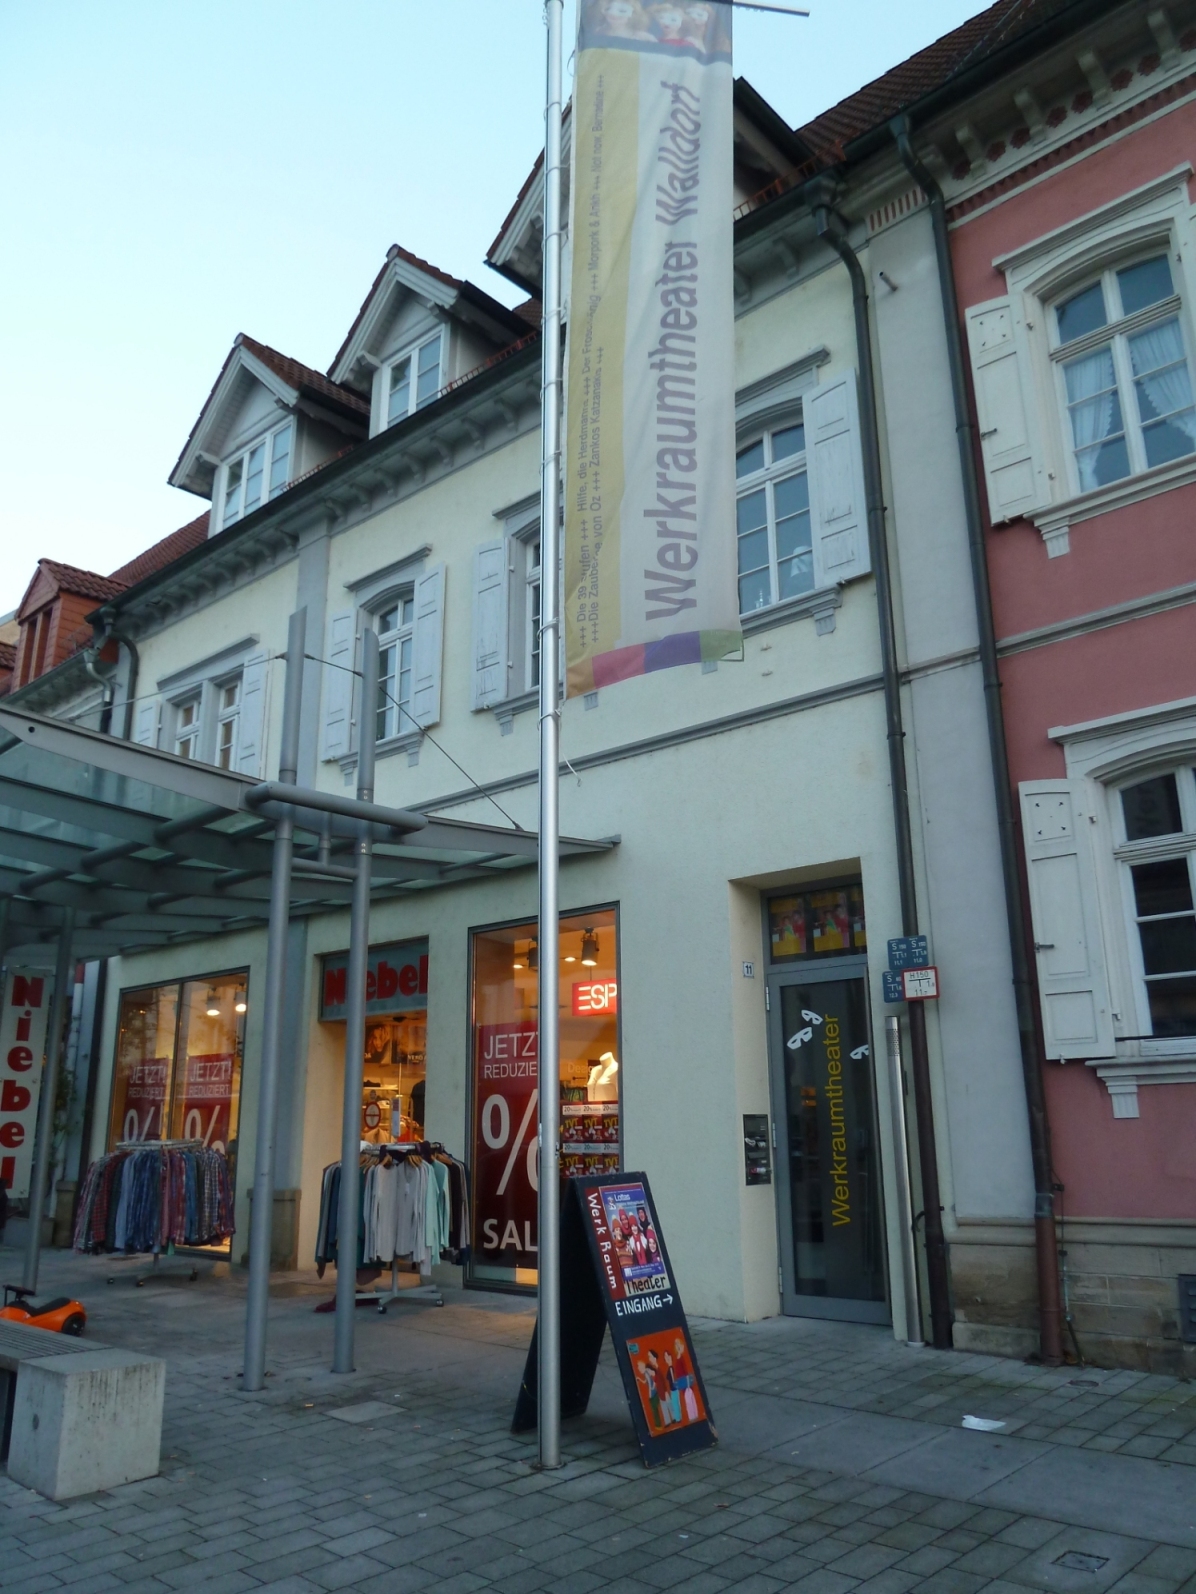 Werkraumtheater Walldorf: “Kleiner König Dezember”